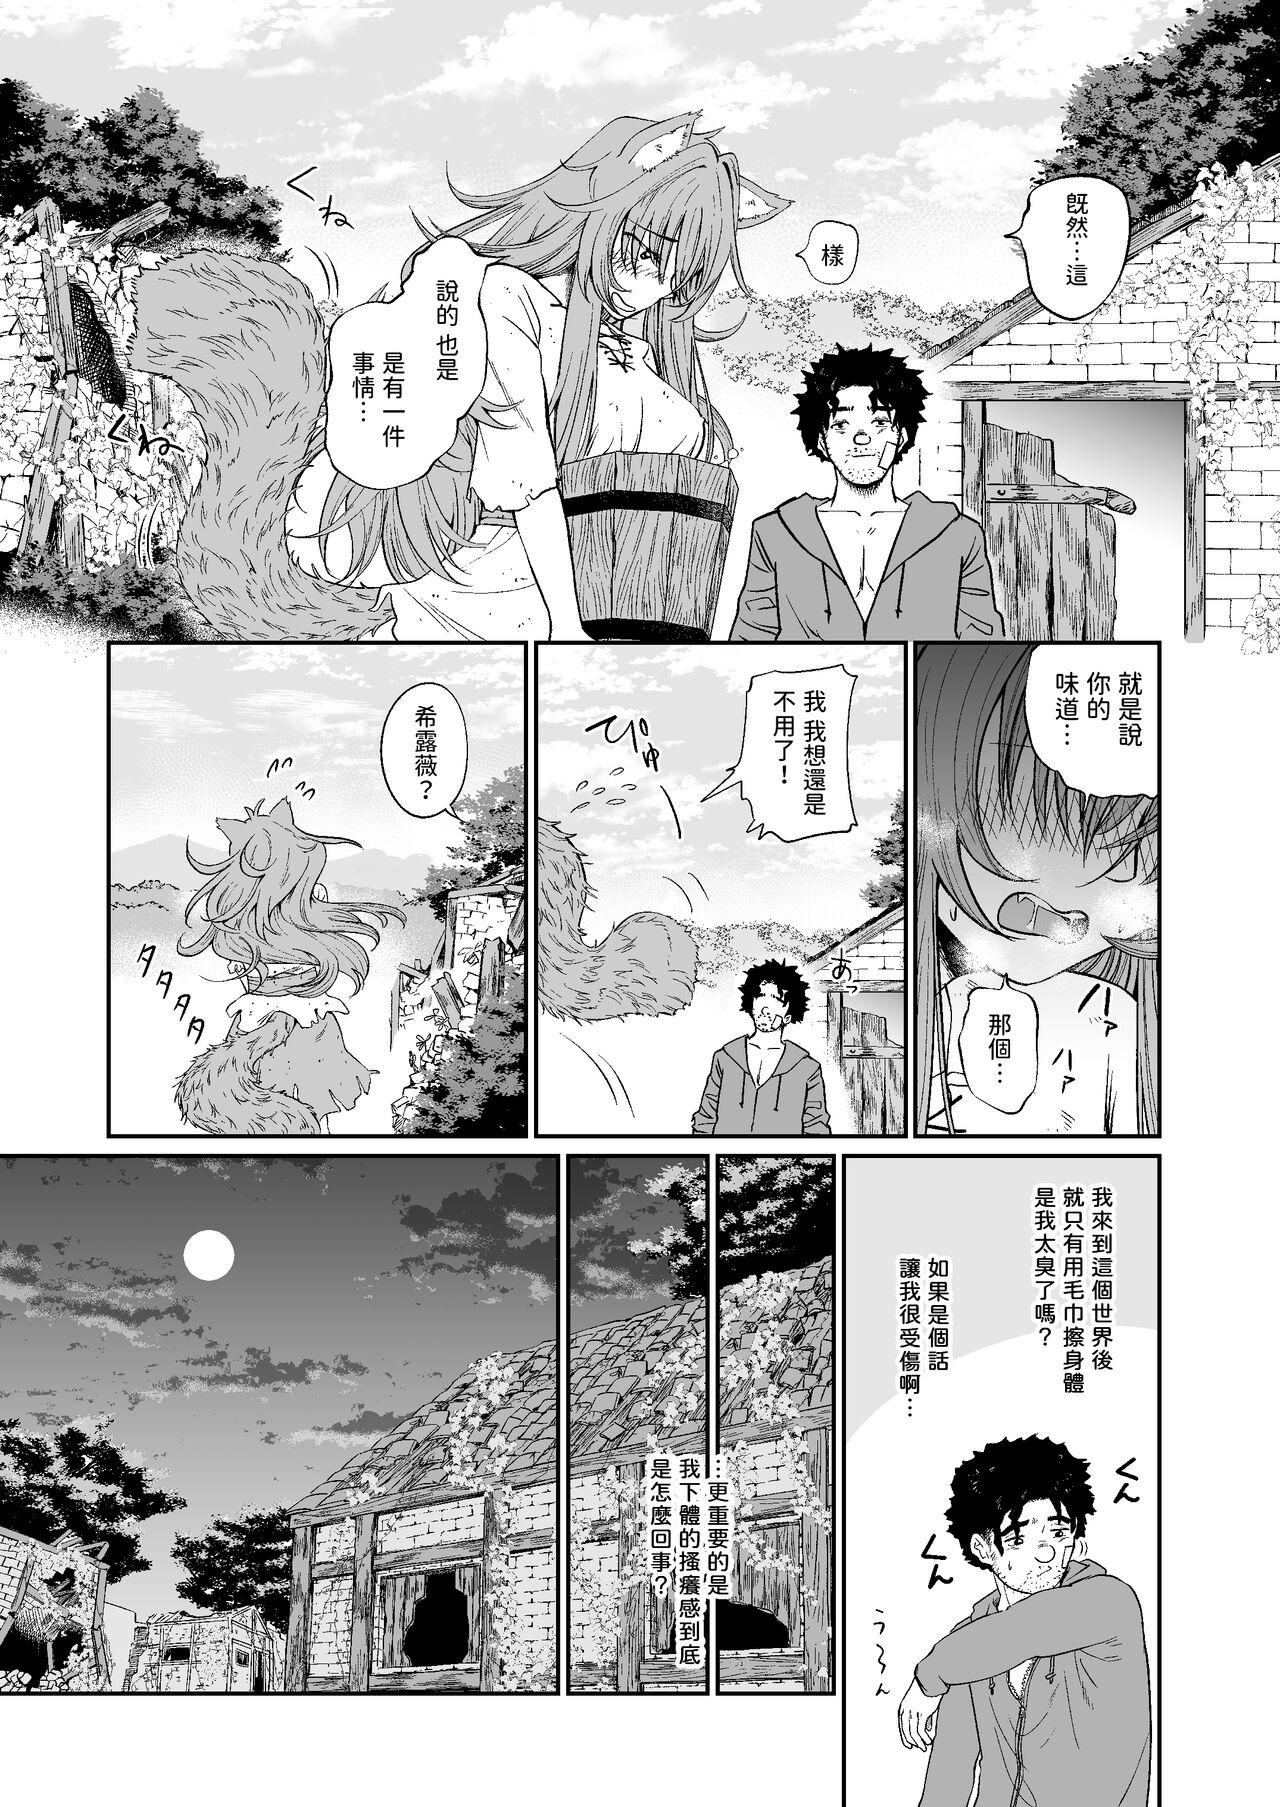 Chaturbate Kemomimi Musume to Zero kara Seikatsu - Original Cocksucker - Page 9